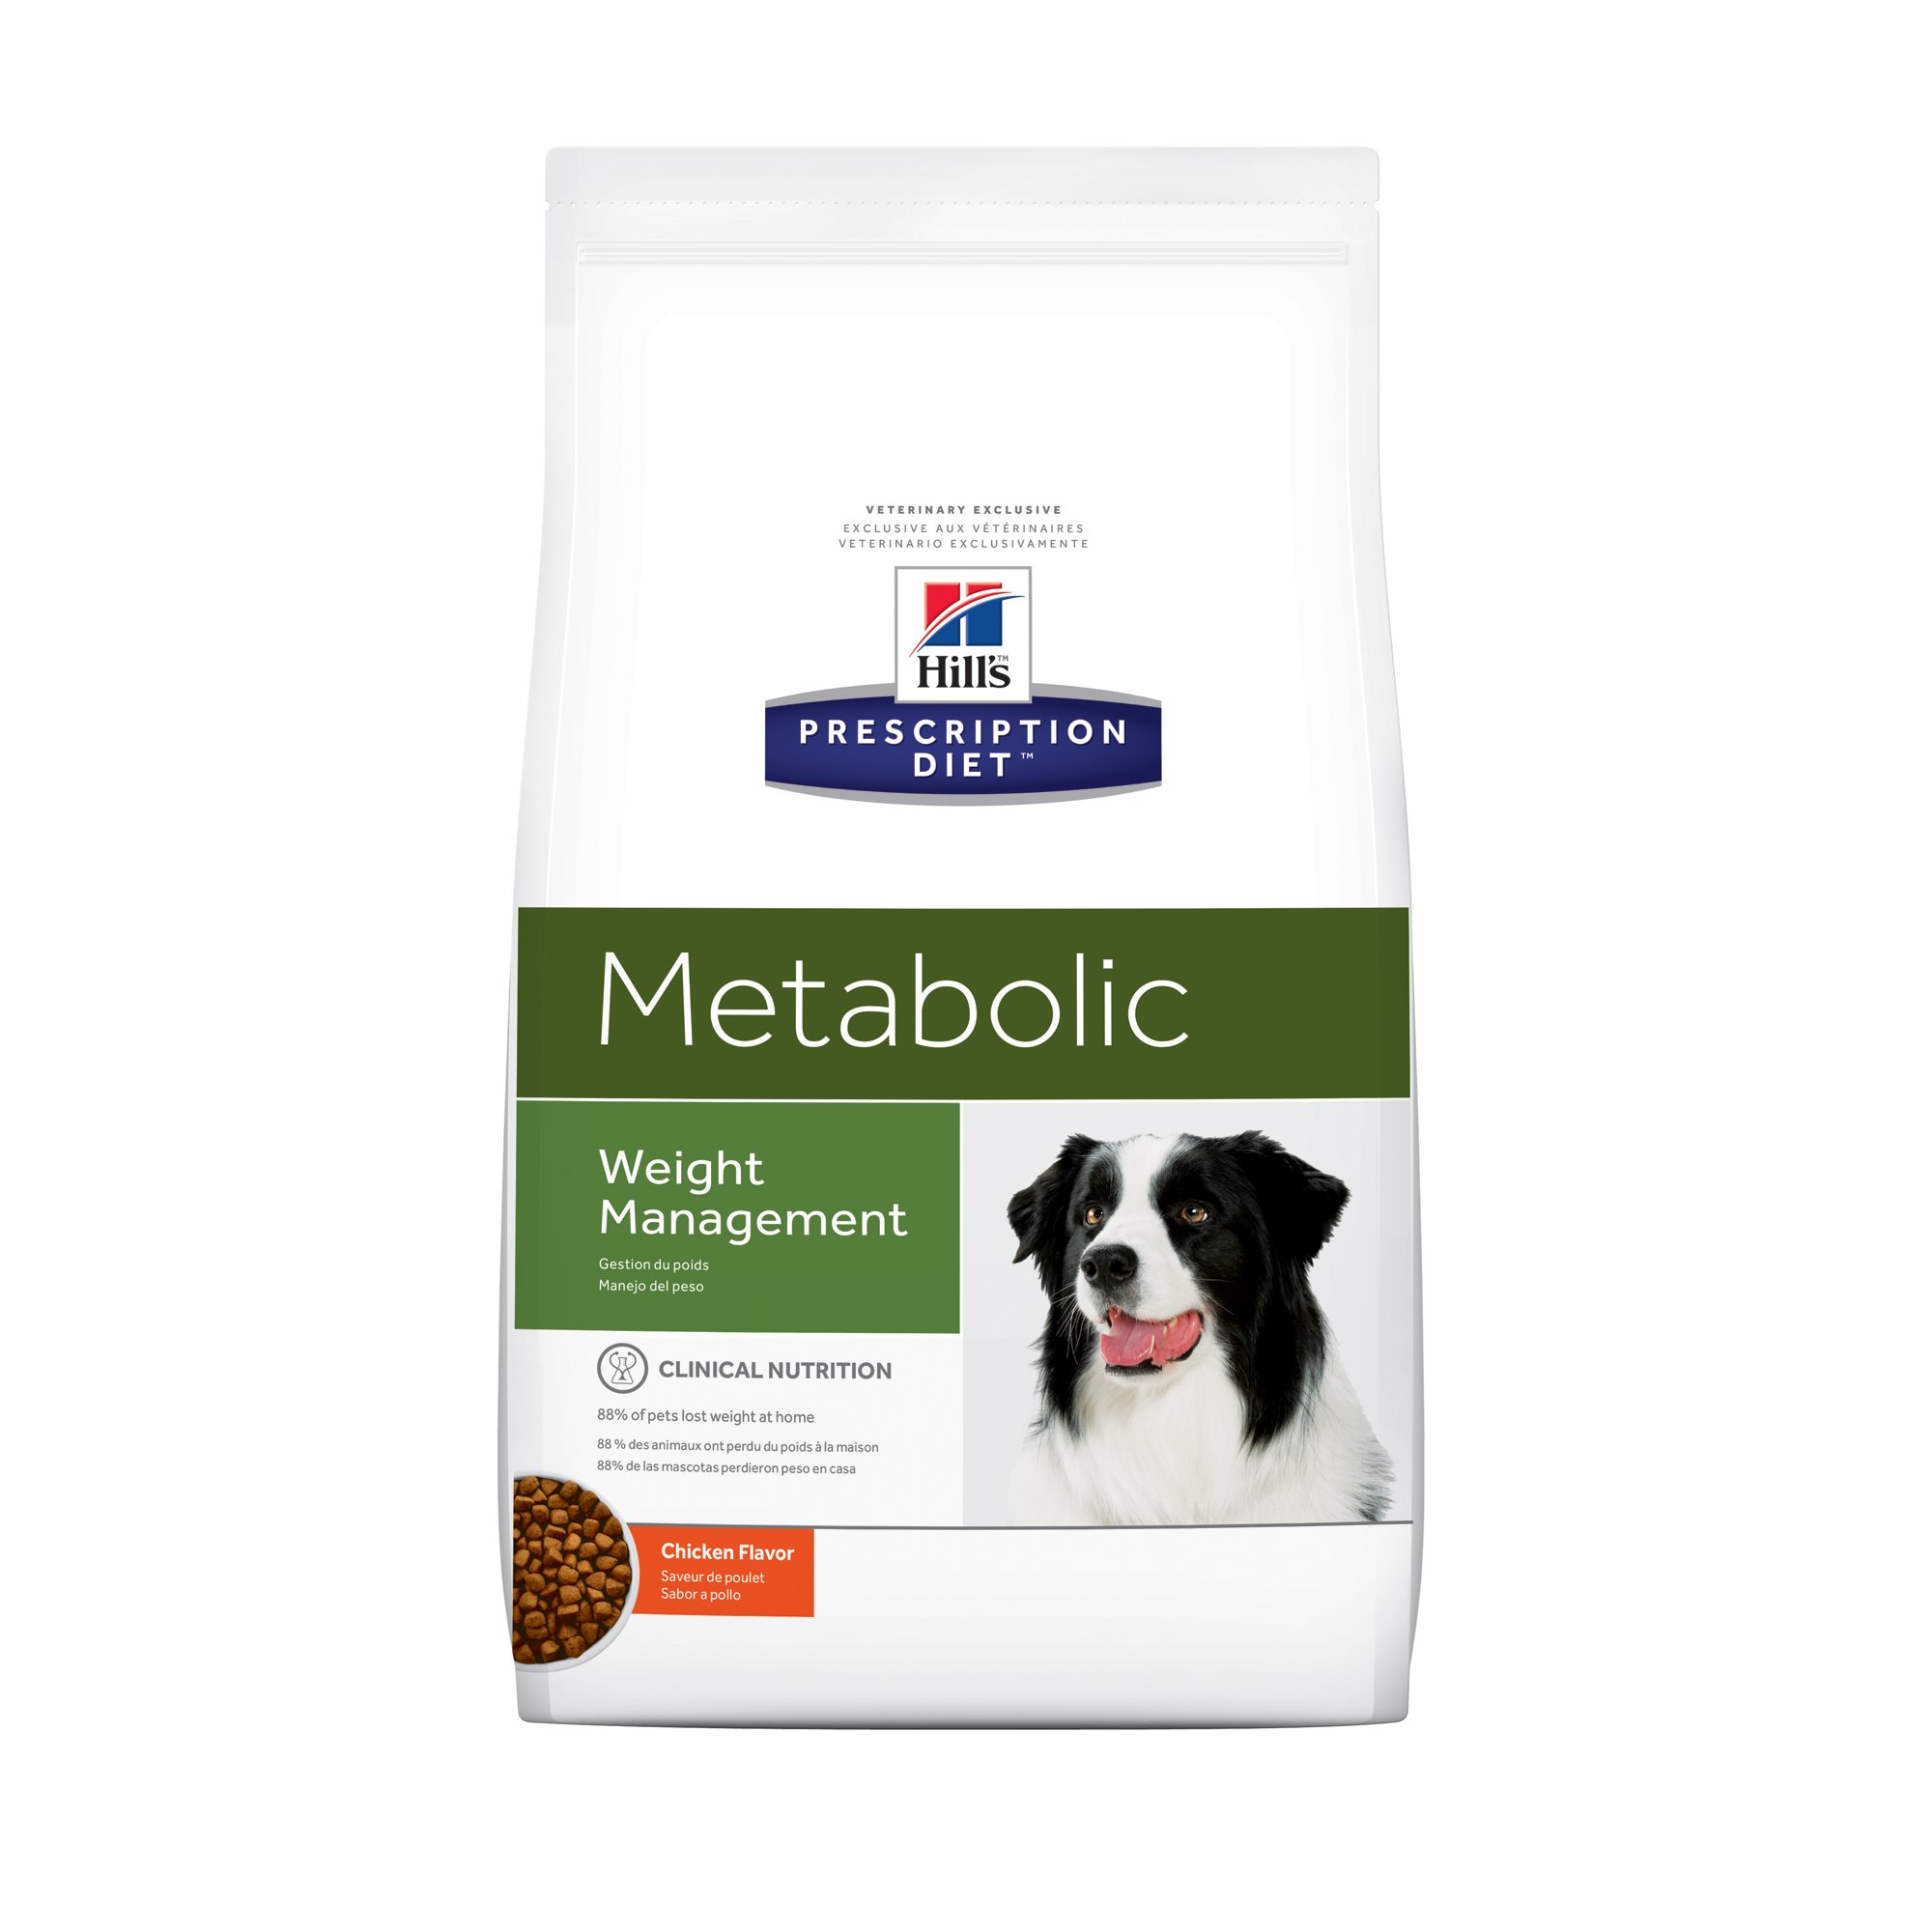 Купить сухой корм для собак хиллс. Корм для собак Hill's Prescription Diet metabolic. Корм для собак Хиллс Метаболик. Хиллс Метаболик для собак. Хиллс корм для собак Метаболик крупных пород.